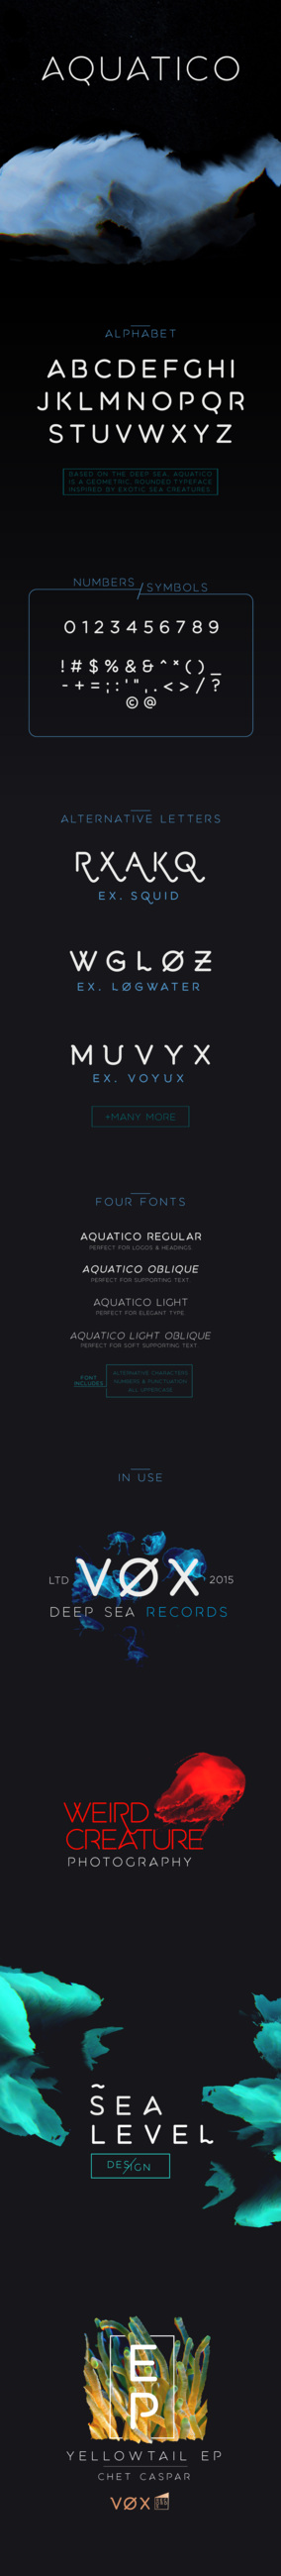 aquatico font free download